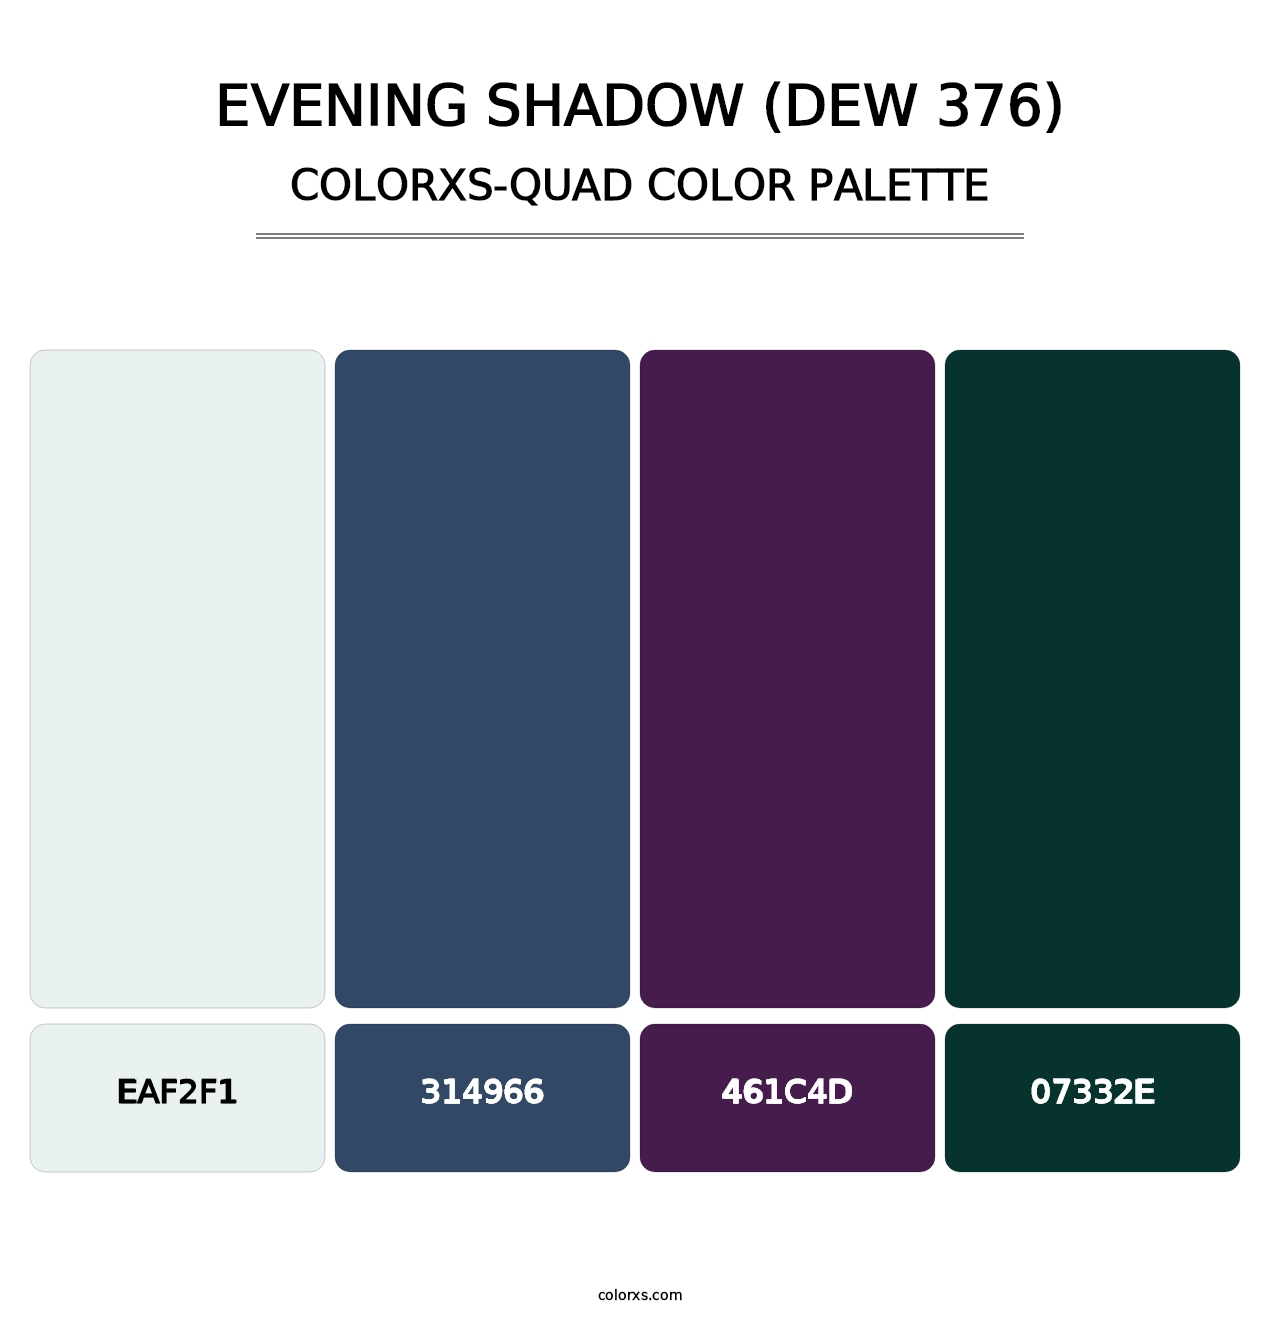 Evening Shadow (DEW 376) - Colorxs Quad Palette